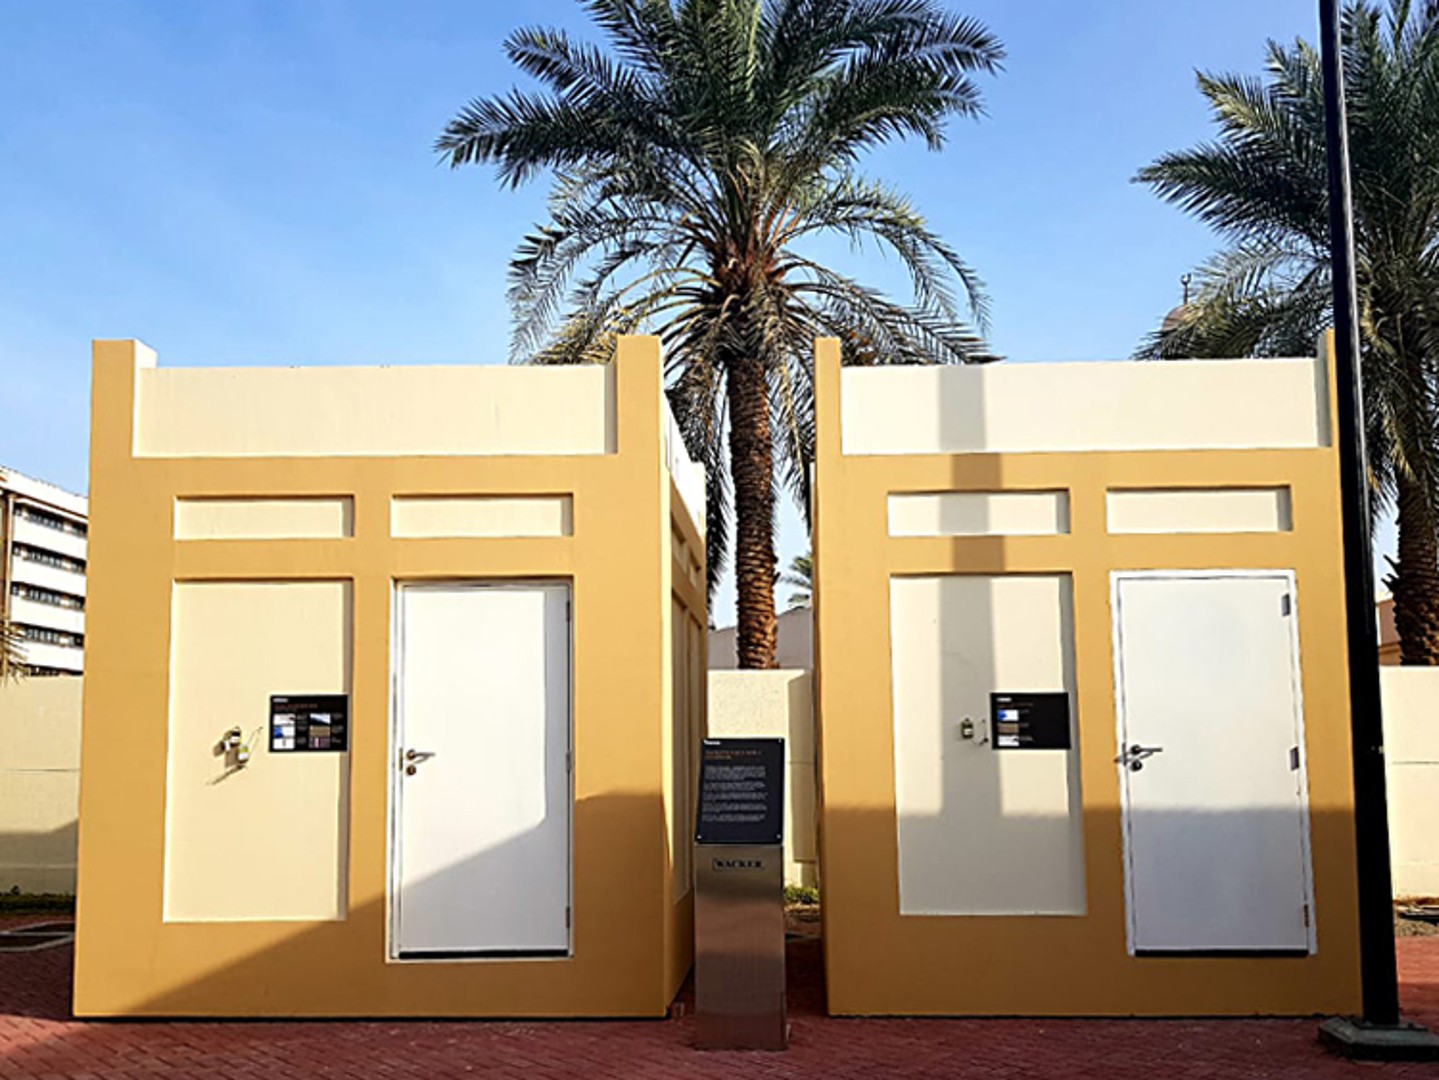 two model houses in Dubai